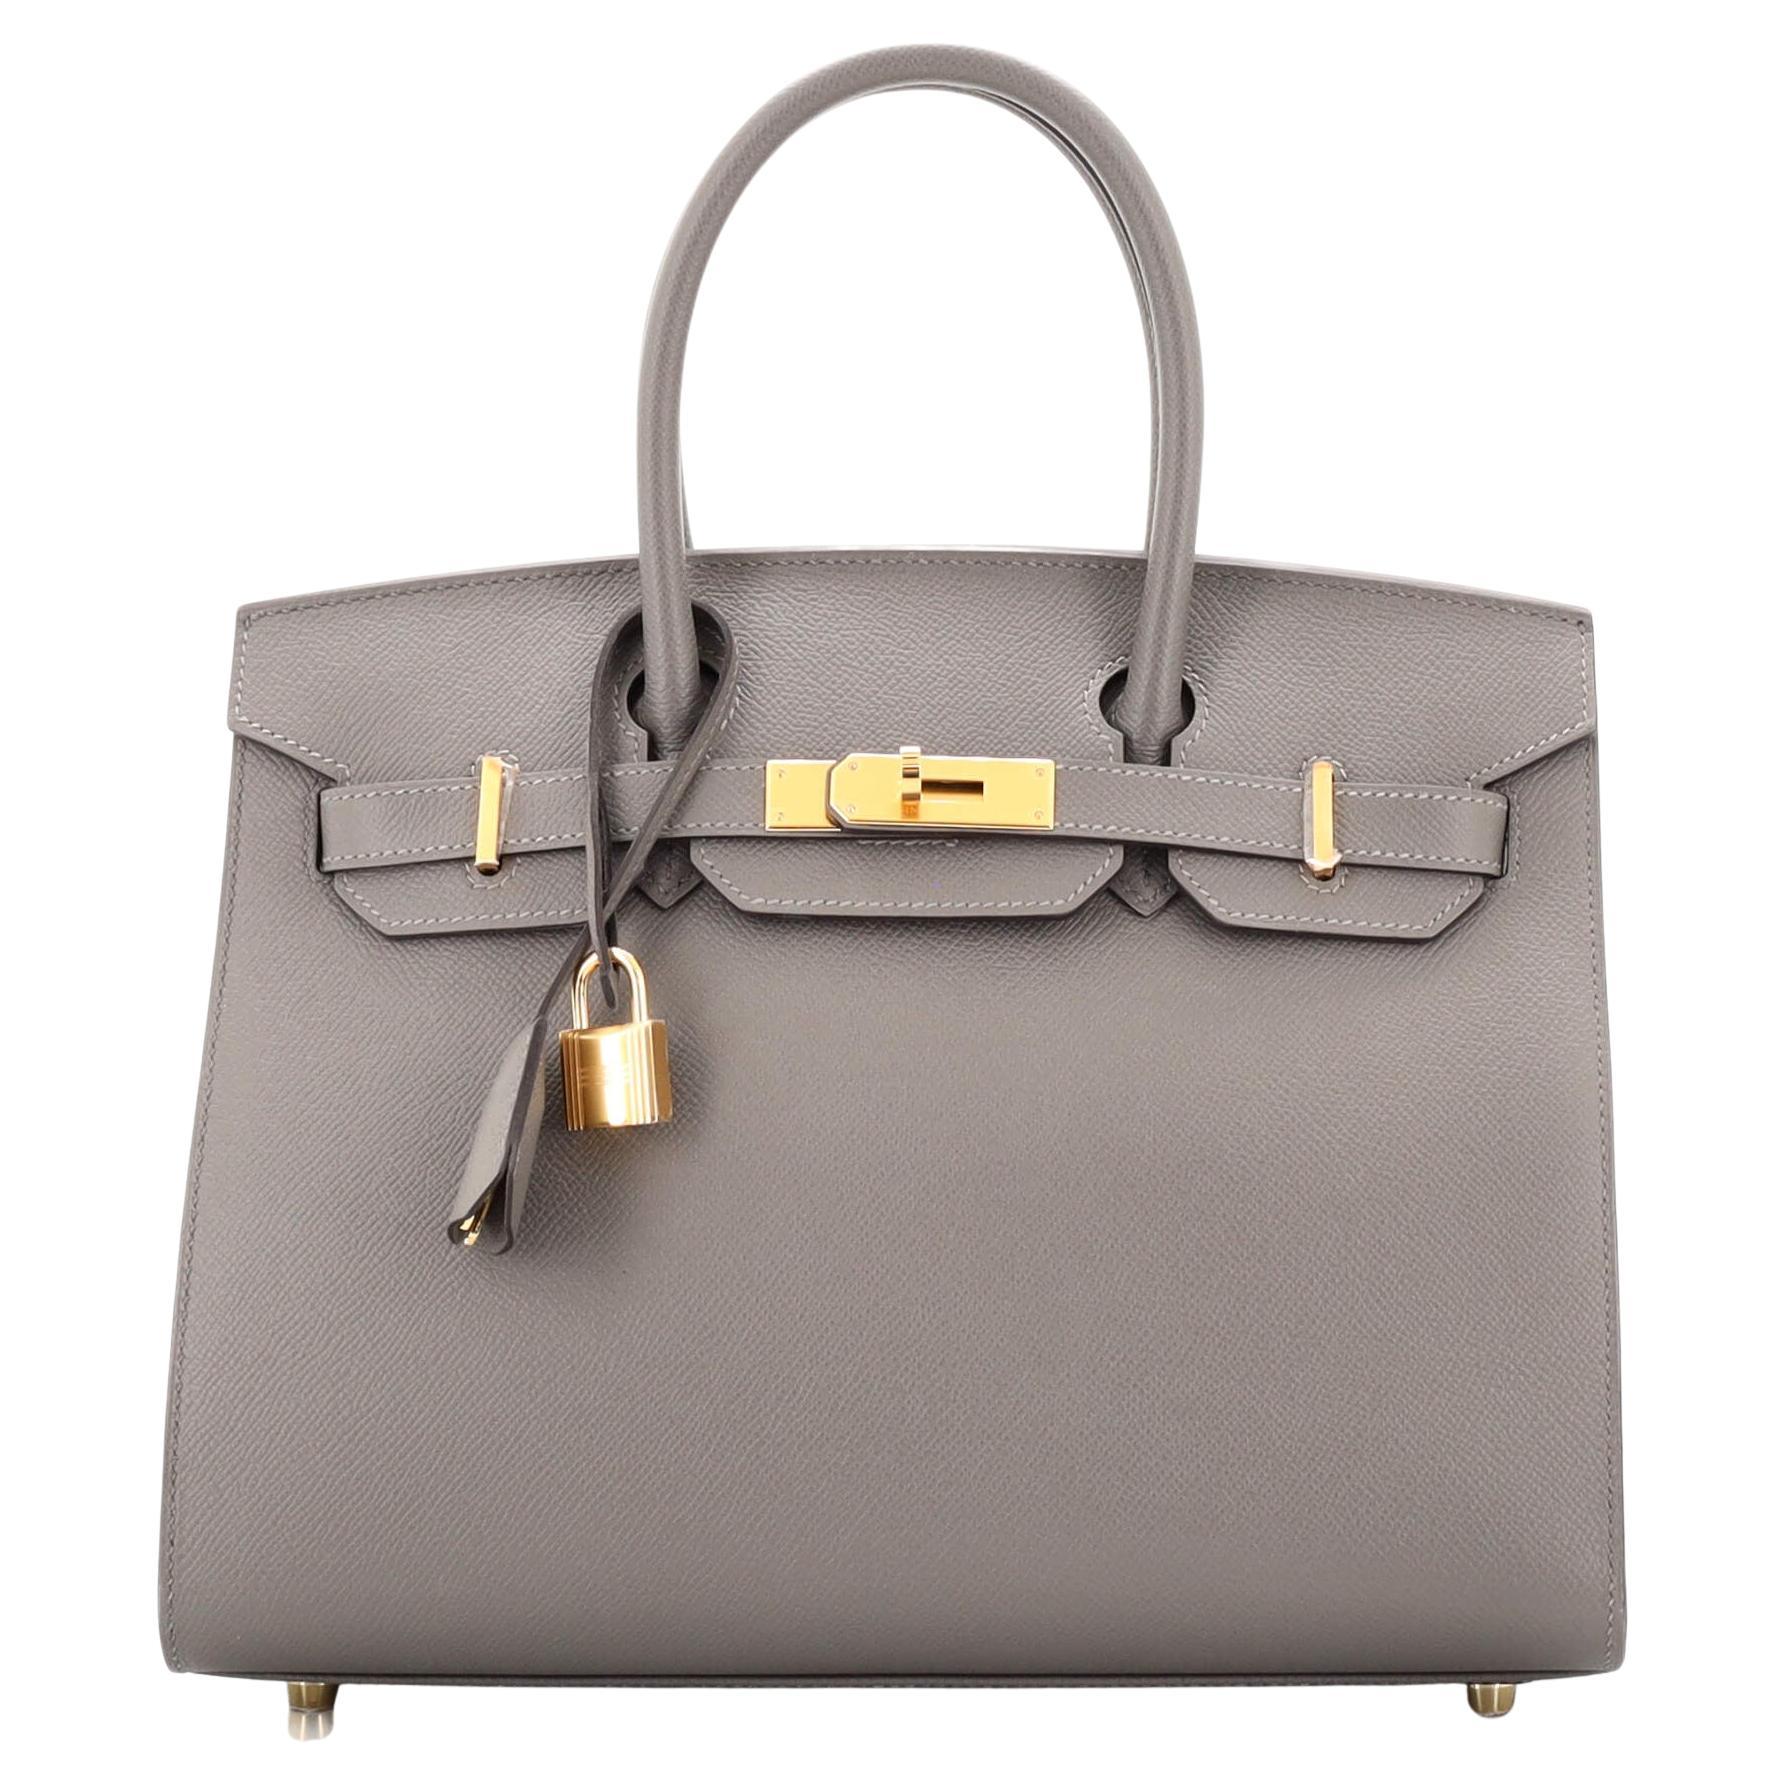 Hermes Birkin Sellier Bag Gris Meyer Epsom with Gold Hardware 30